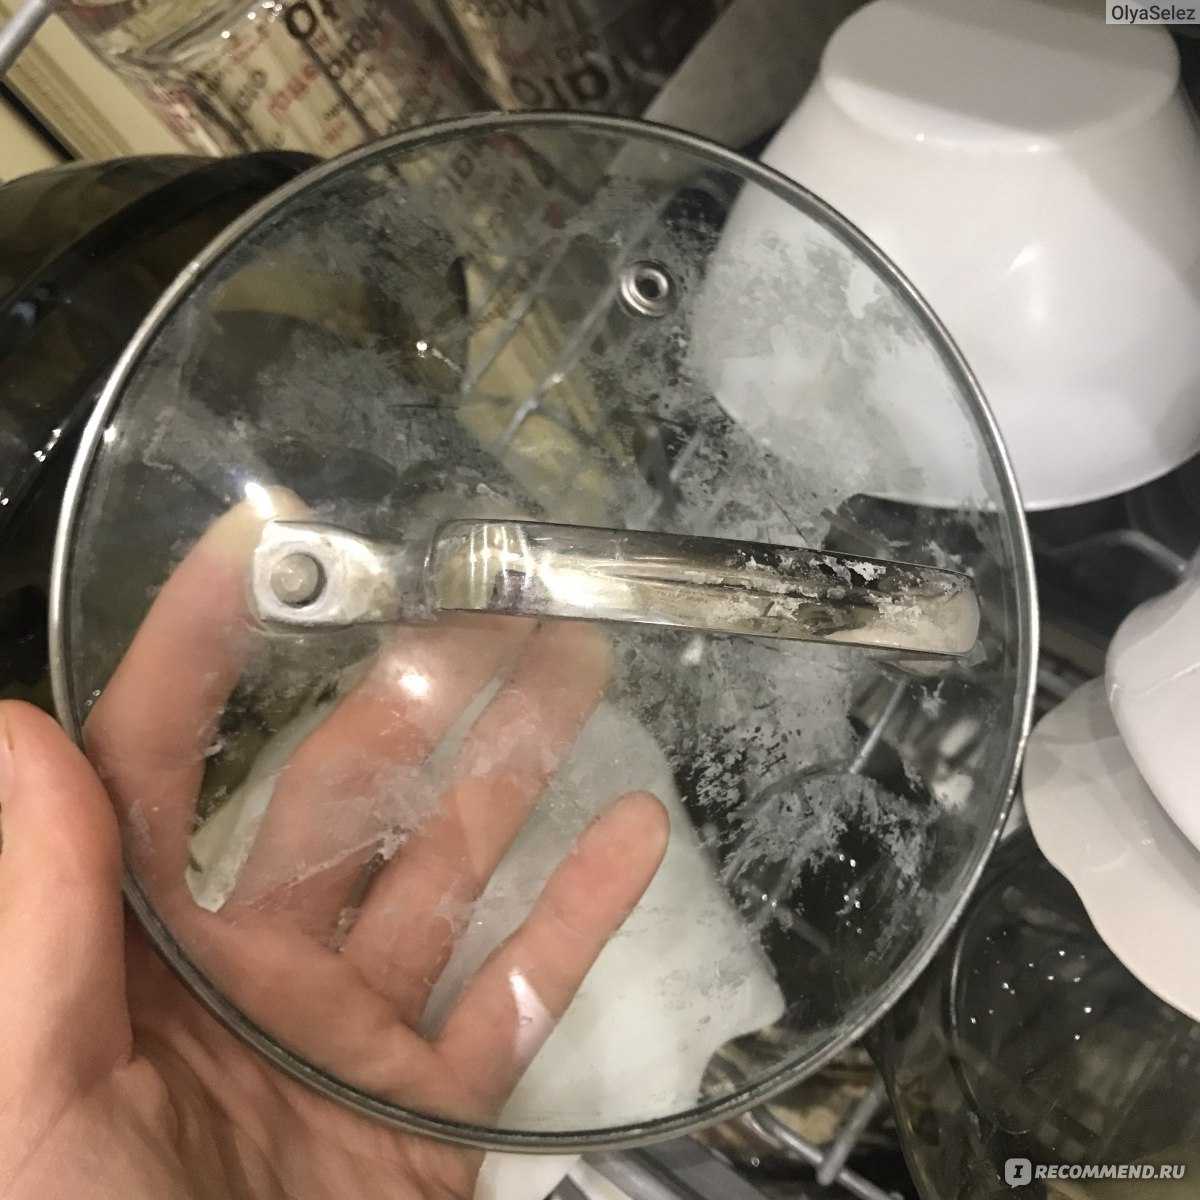 Налет после посудомоечной машины почему. Белый налет на посуде и в посудомоечной машине. Налёт на посуде после посудомойки. После посудомойки посуда в белом налете. Белый налет на стекле после посудомойки.